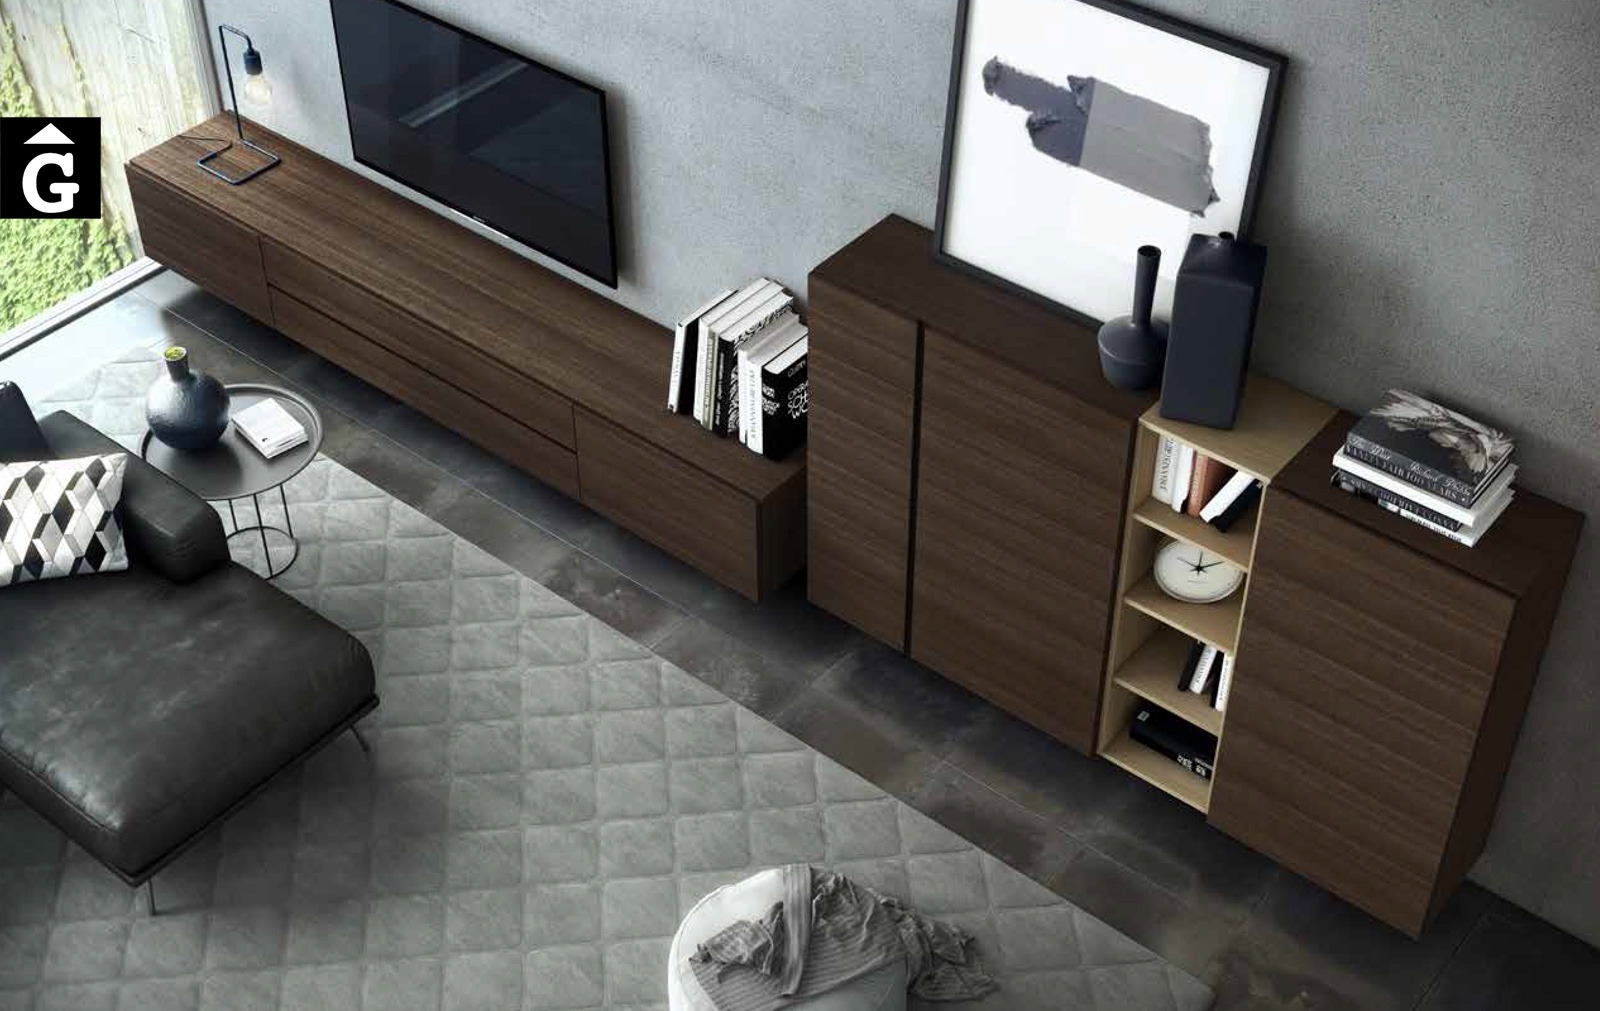 16 0 Area mobles Ciurans per mobles Gifreu programa modular disseny atemporal realitzat amb materials i ferratges de qualitat estil modern minimal